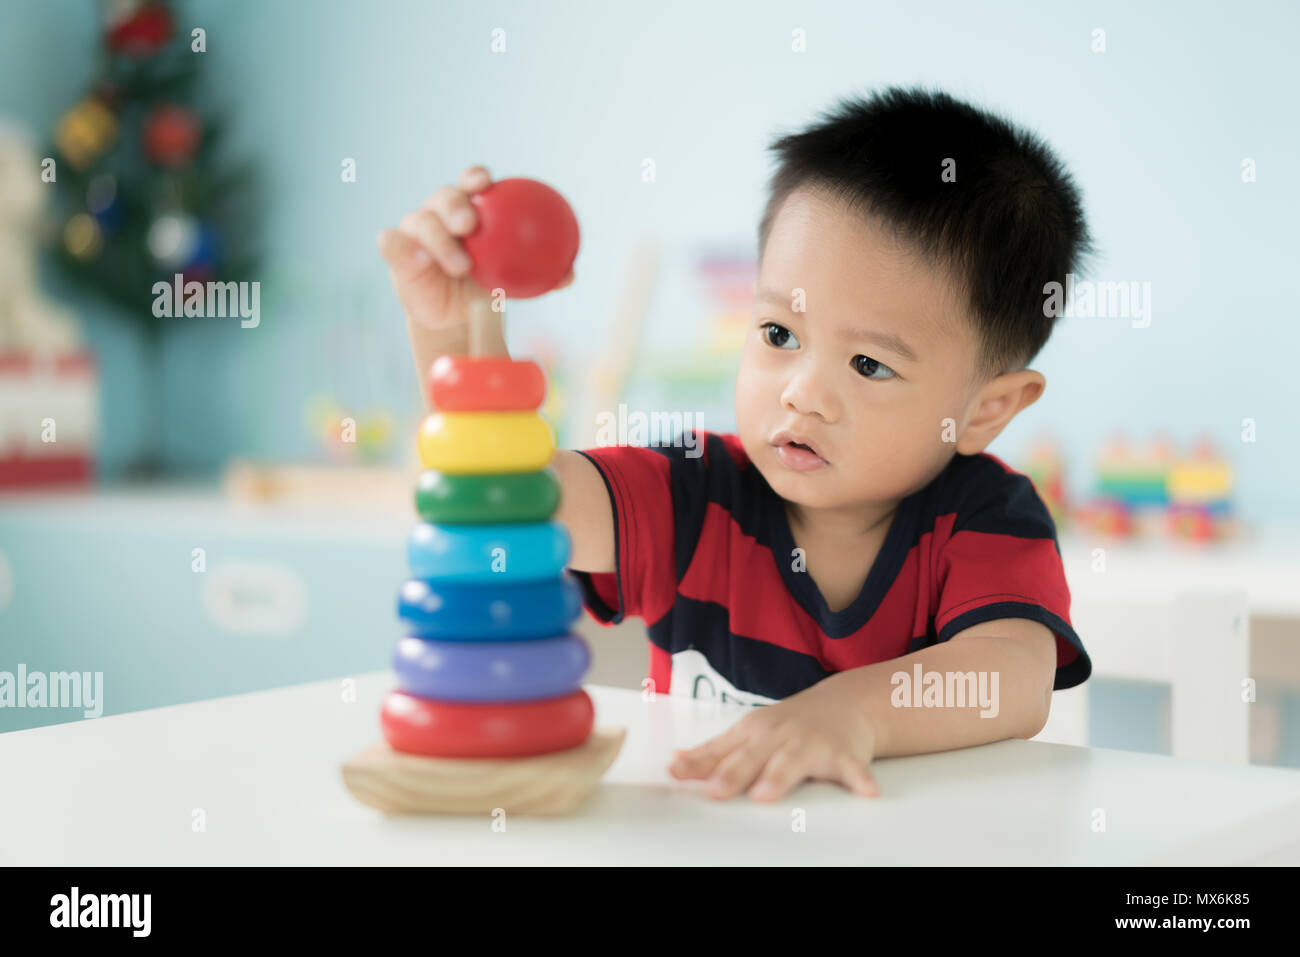 Tout-petits Asie adorable baby boy sitting on chair et en jouant avec des jouets de couleur à la maison. Banque D'Images